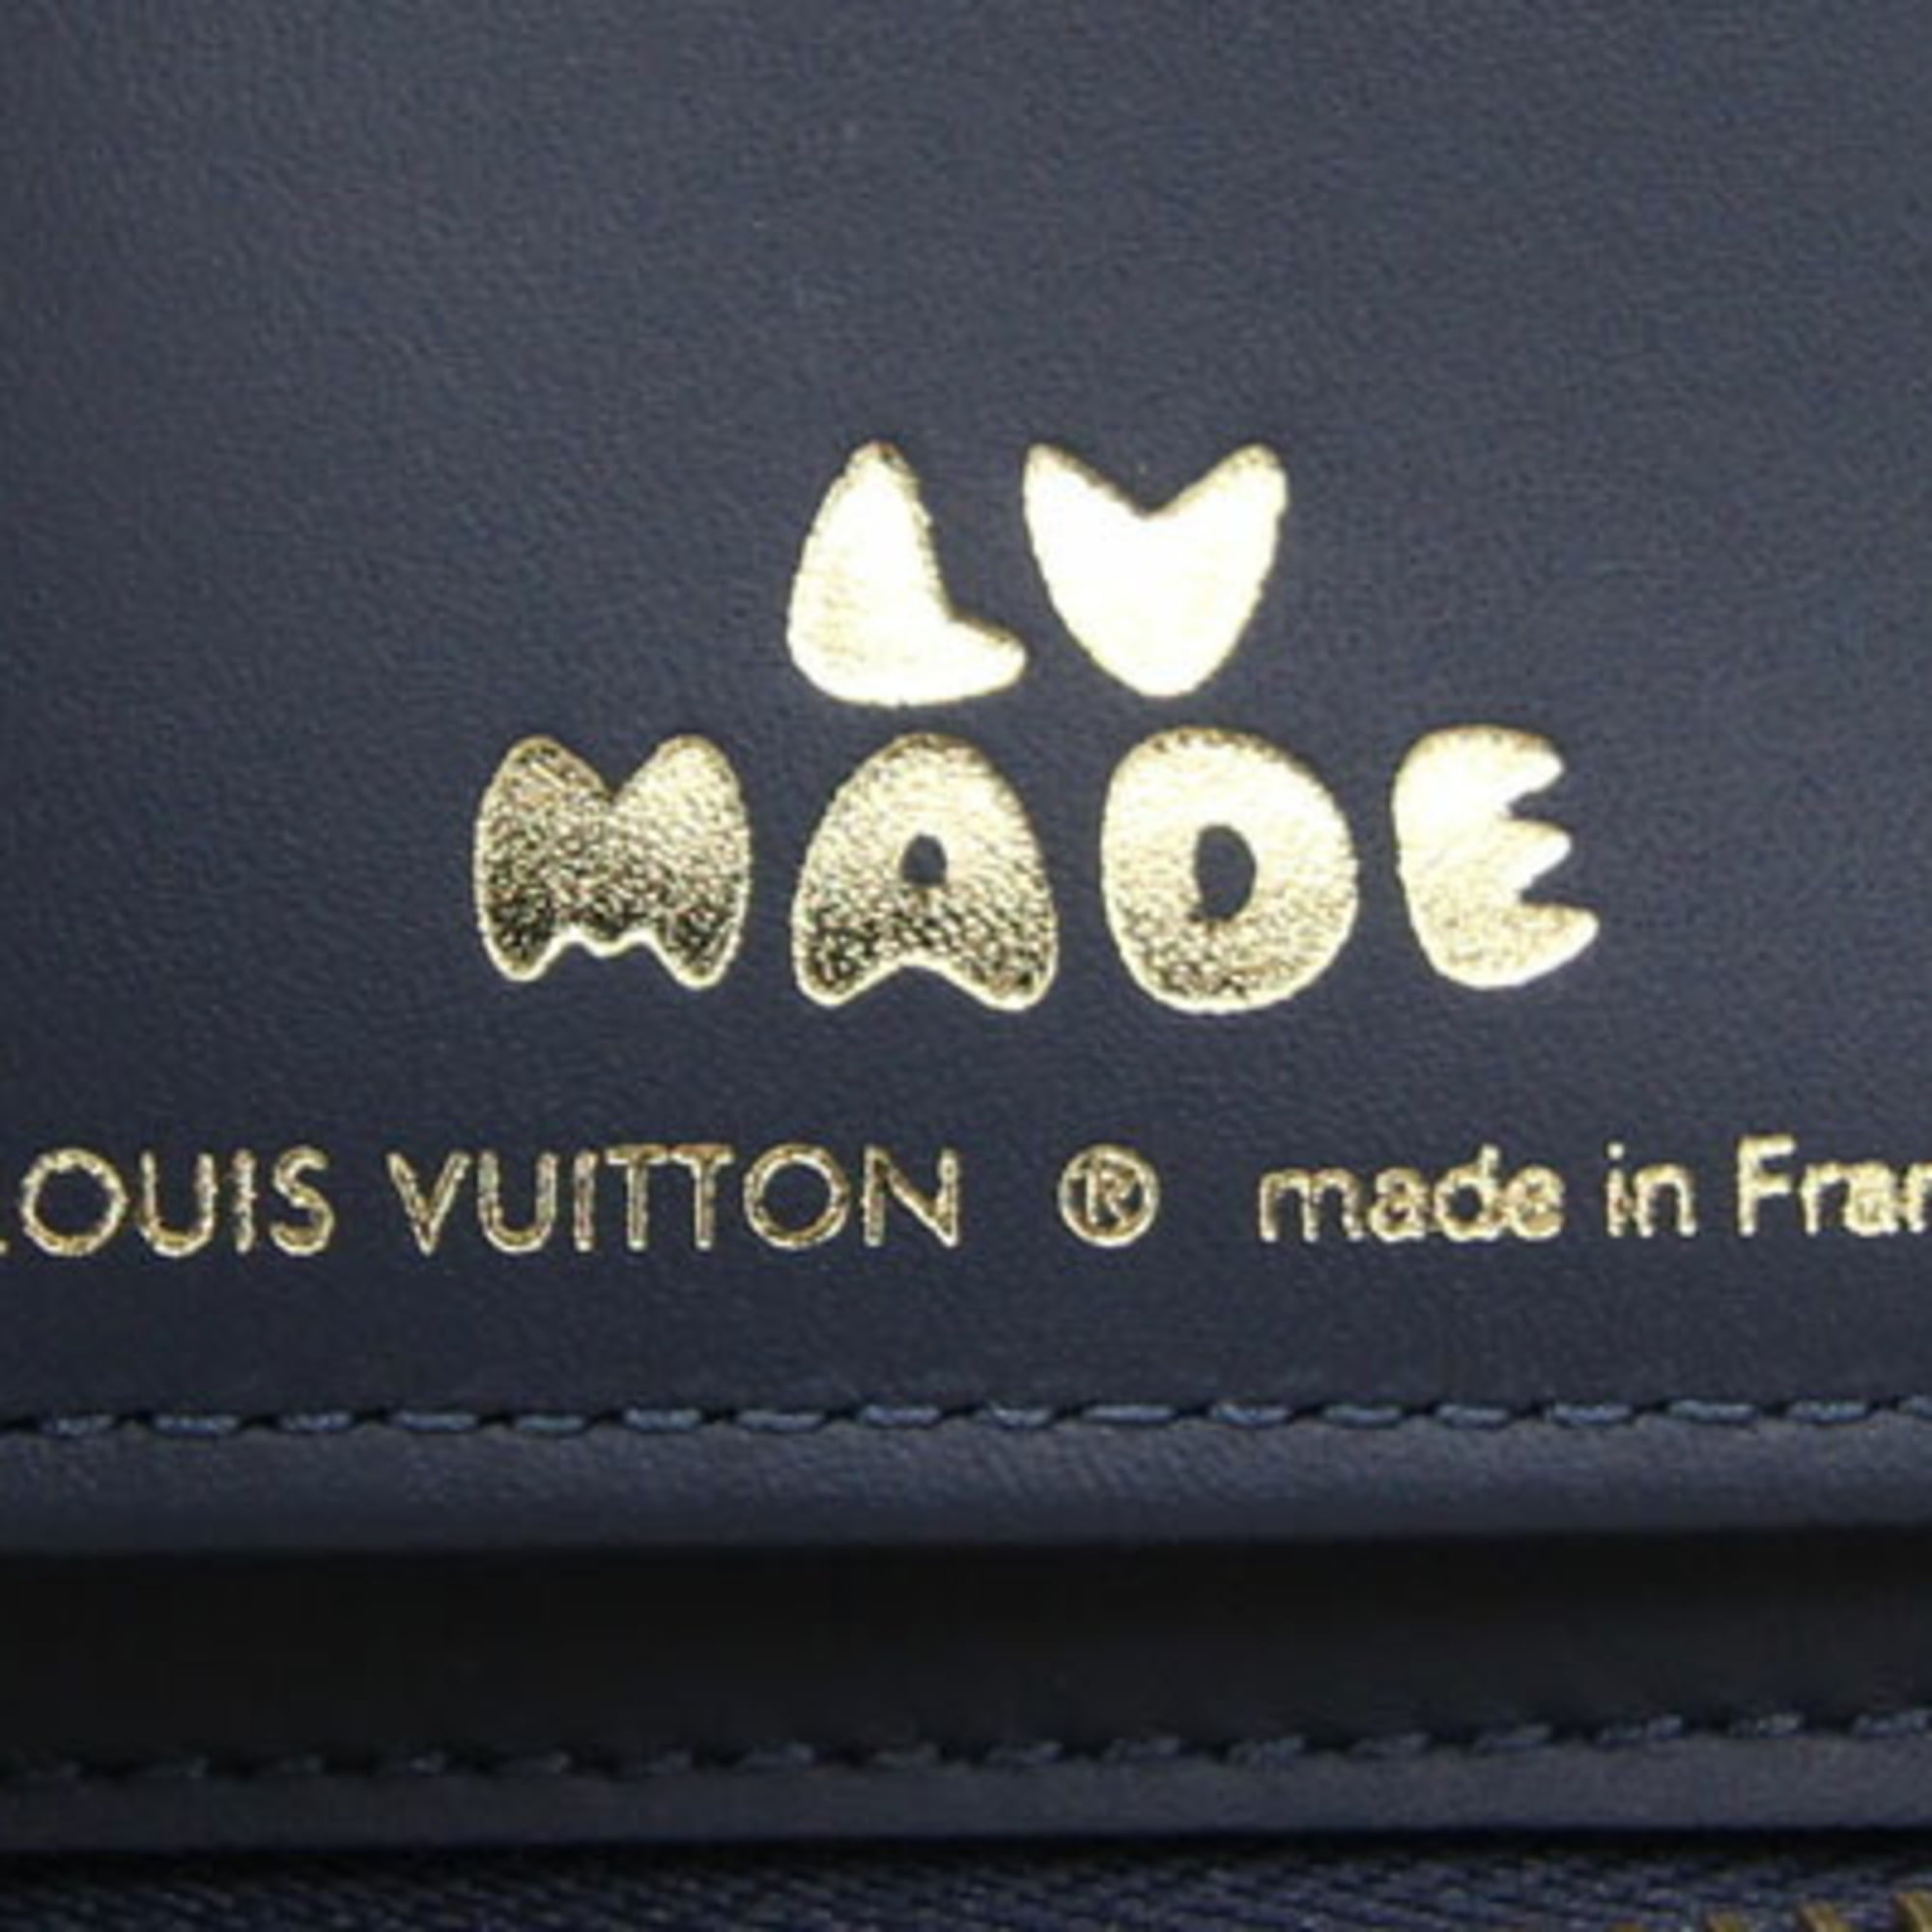 Louis Vuitton x Nigo Long Wallet